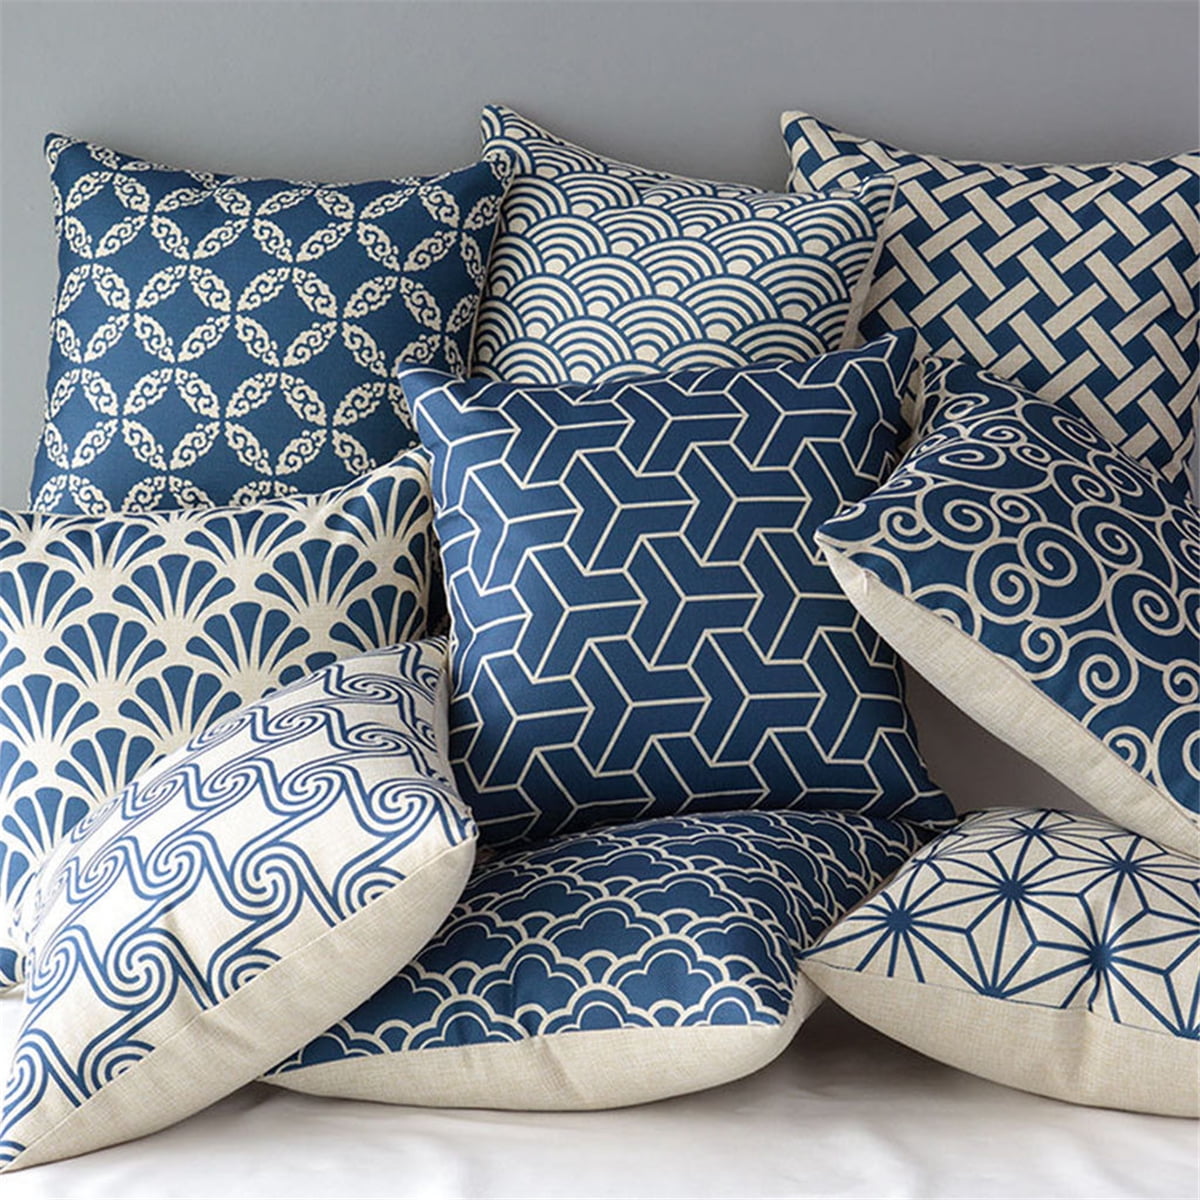 Art Cotton Linen Pillow Case Throw Cushion Cover Home Decor 18x18 